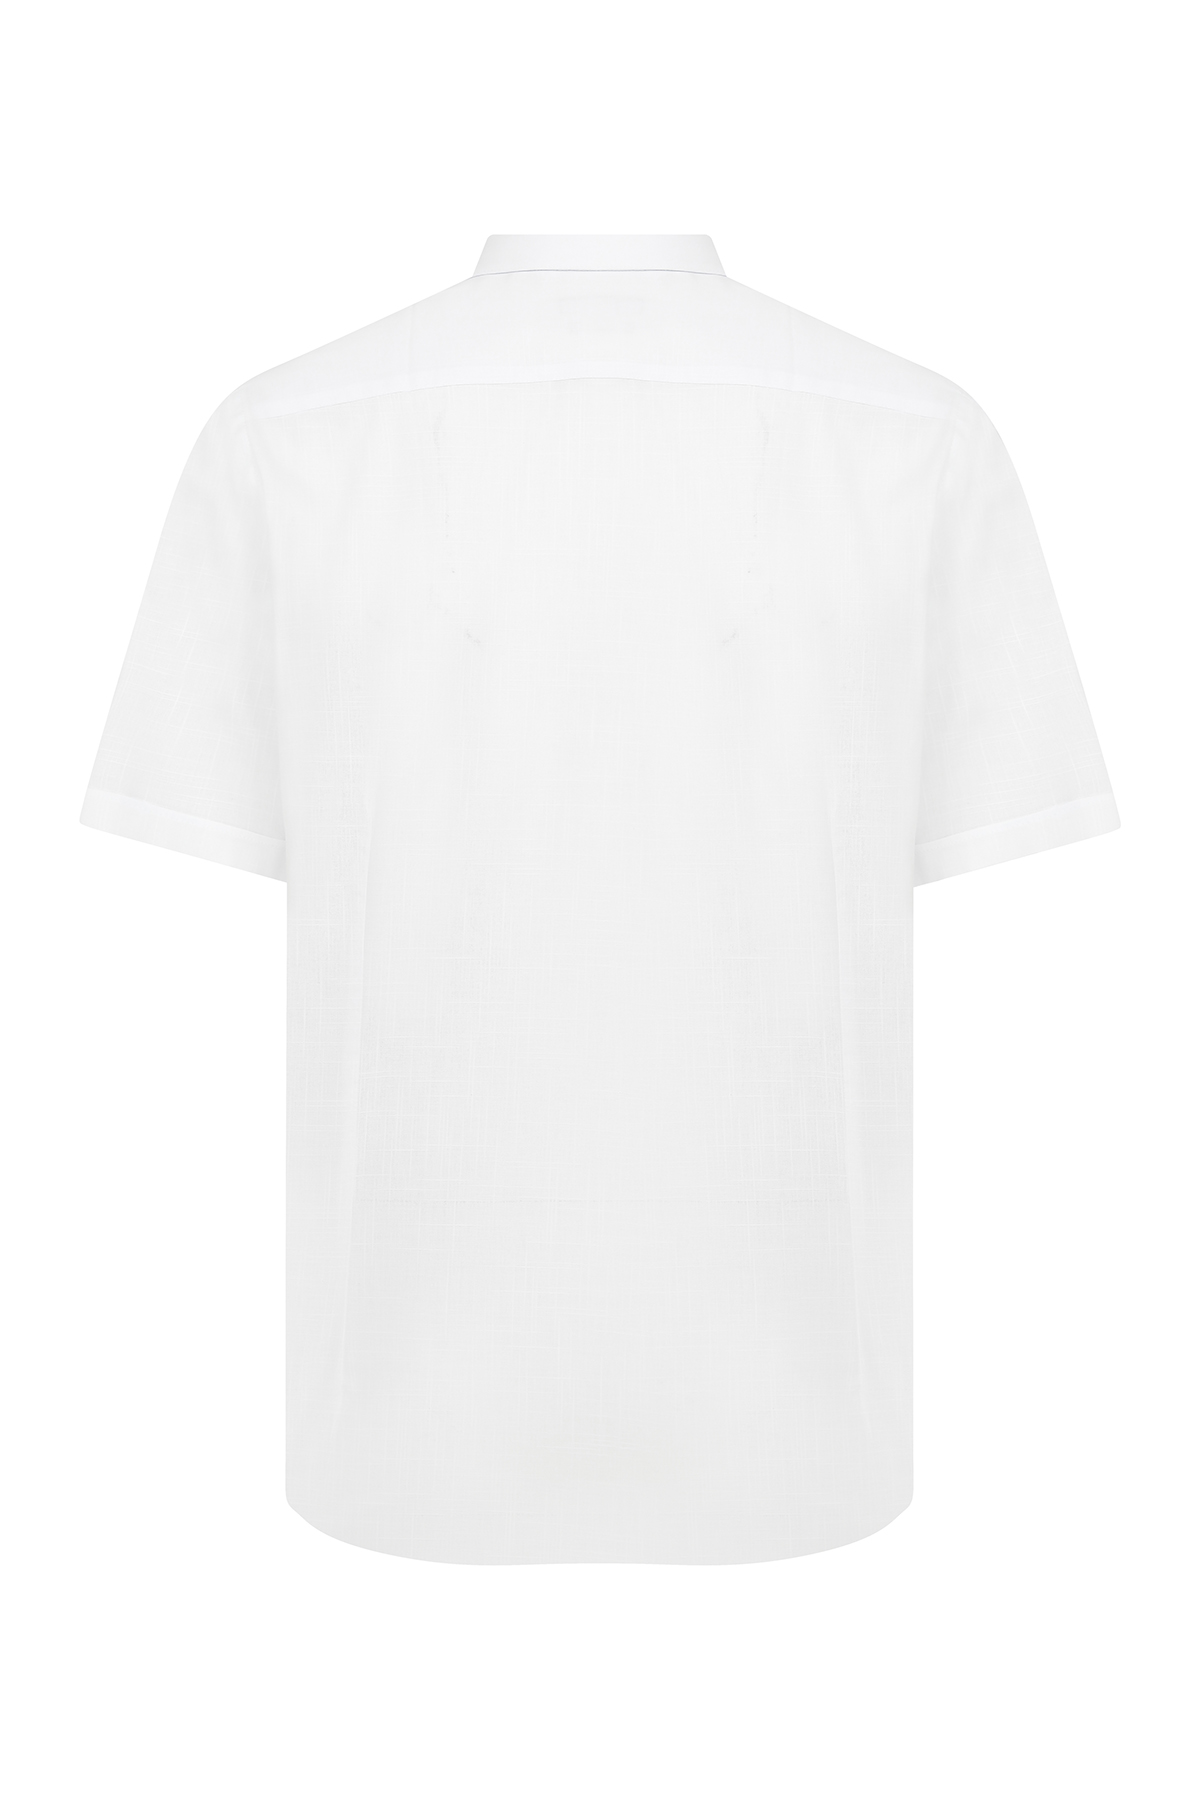 Beyaz Kısa Kol Desenli Klasik Gömlek